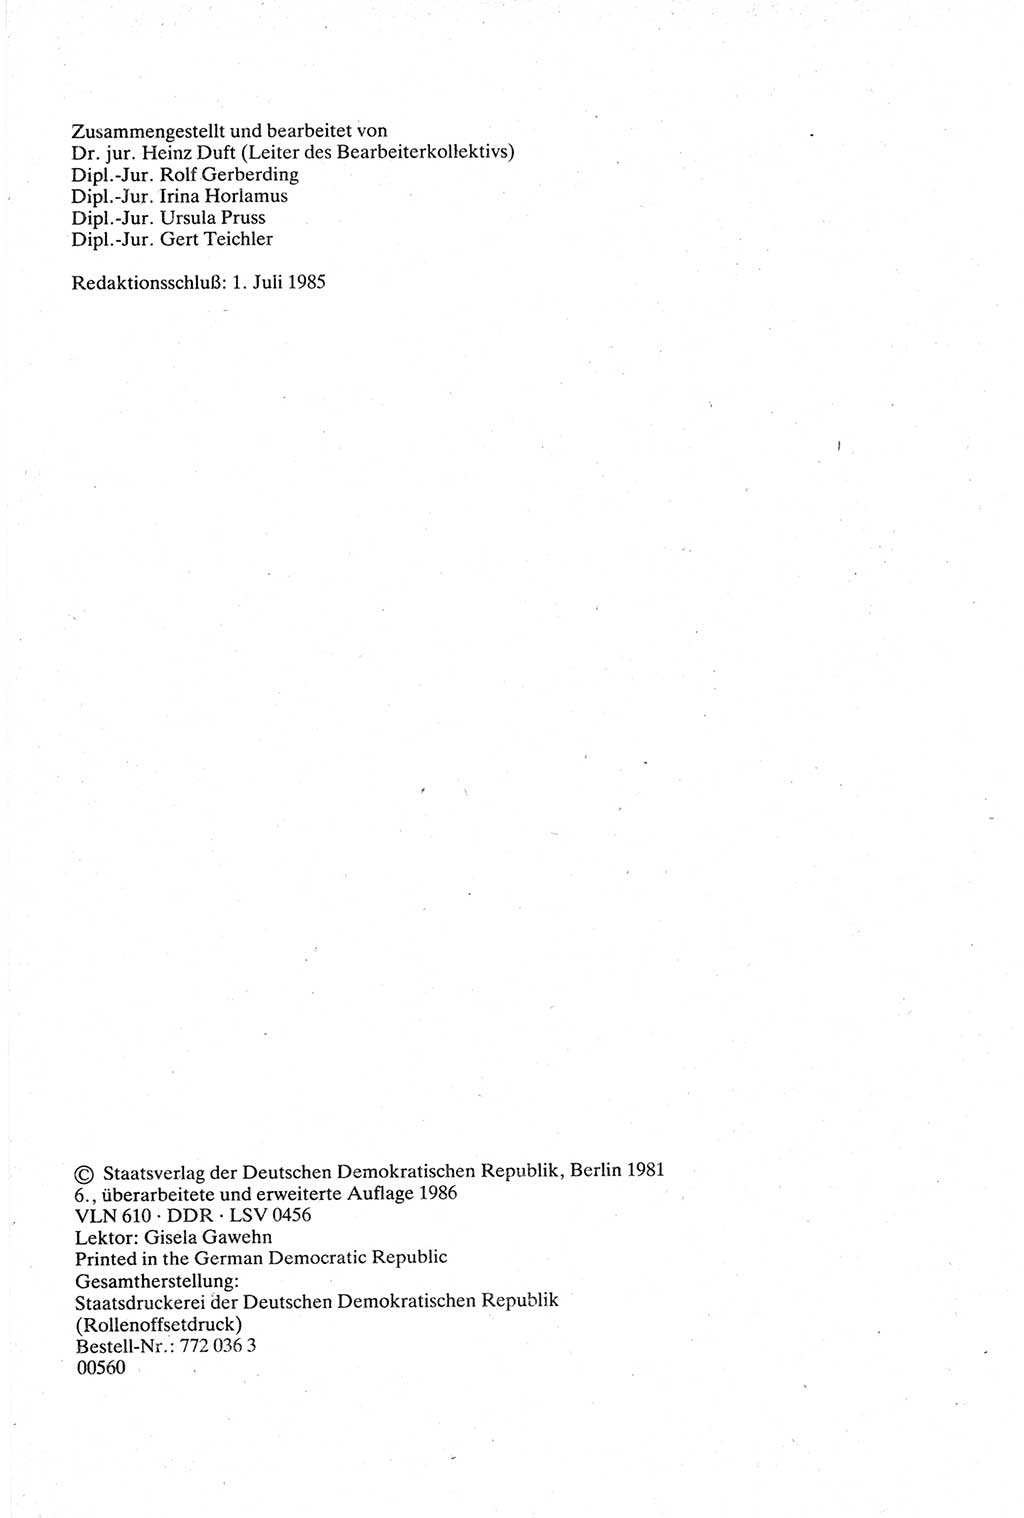 Strafgesetzbuch (StGB) der Deutschen Demokratischen Republik (DDR) sowie angrenzende Gesetze und Bestimmungen 1979, Seite 2 (StGB DDR Ges. Best. 1979, S. 2)